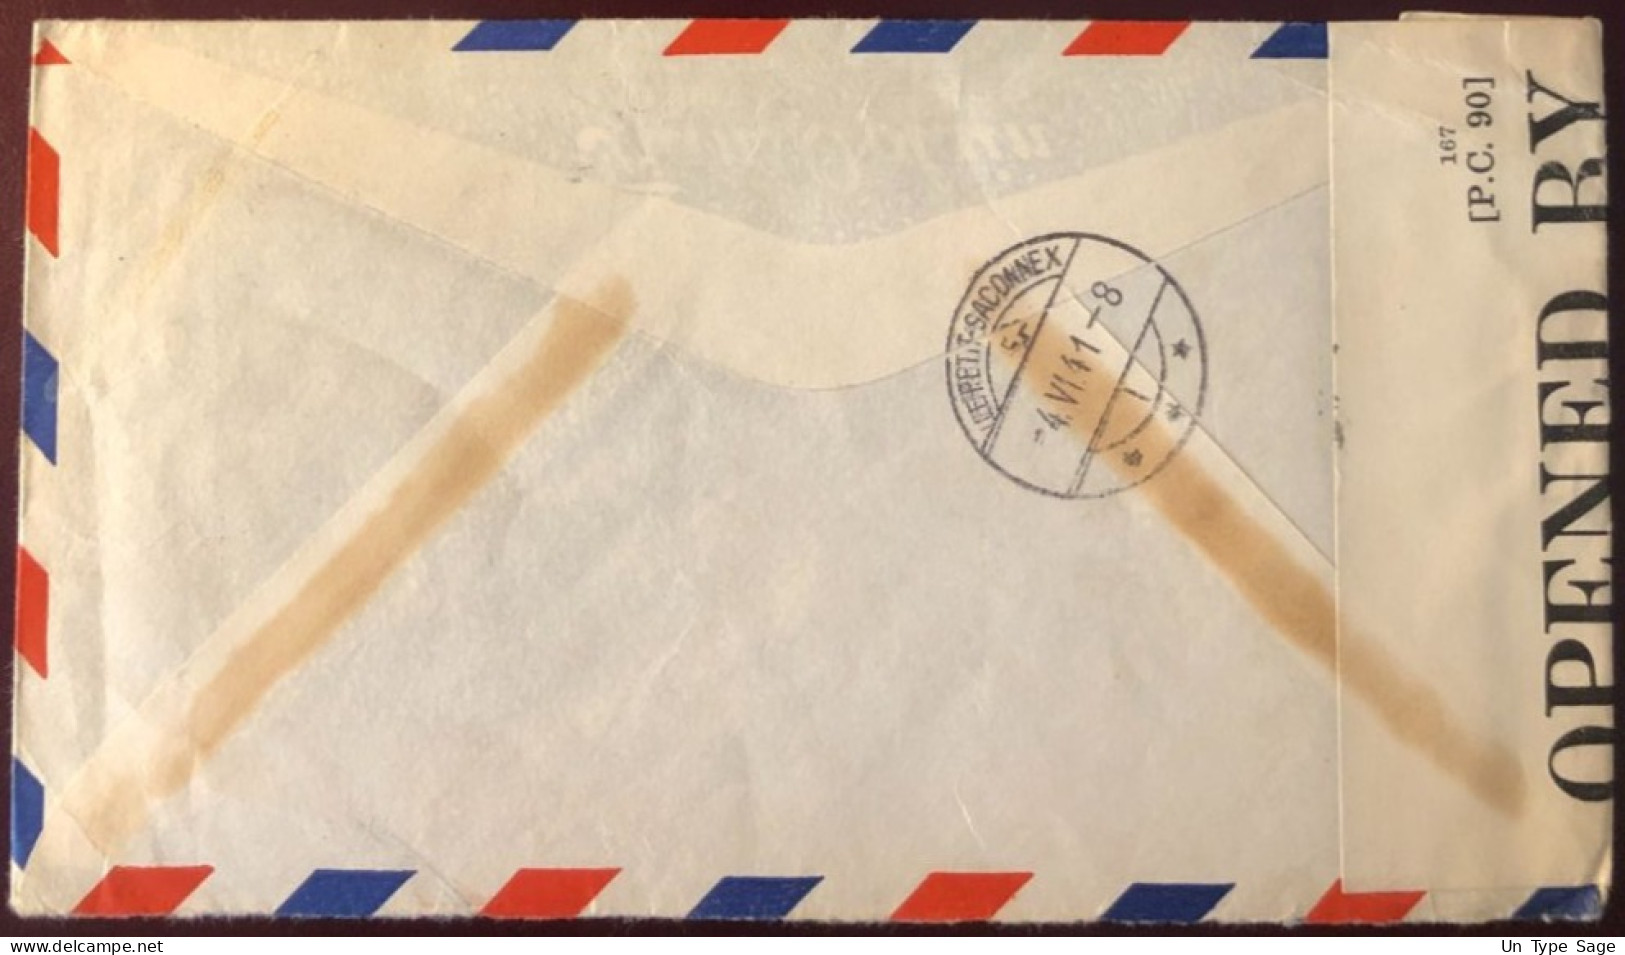 Etats-Unis, Divers PA Sur Enveloppe Censurée De New-York 22.5.1941 Pour La Suisse - (B2704) - Marcofilia